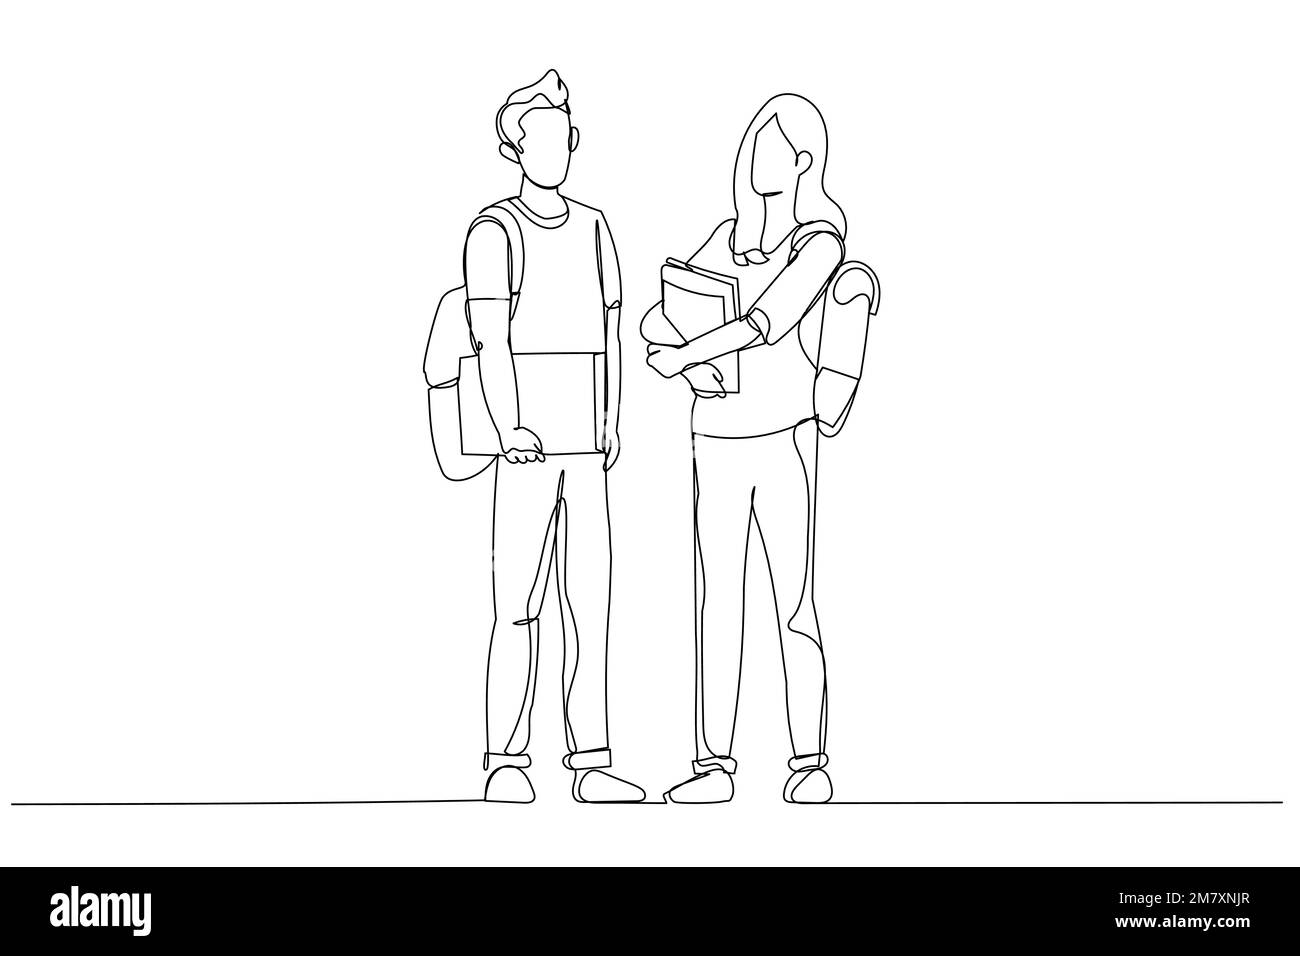 Zeichnung von zwei Studenten, die vor der Klasse stehen und posieren. Strichgrafik-Stil Stock Vektor